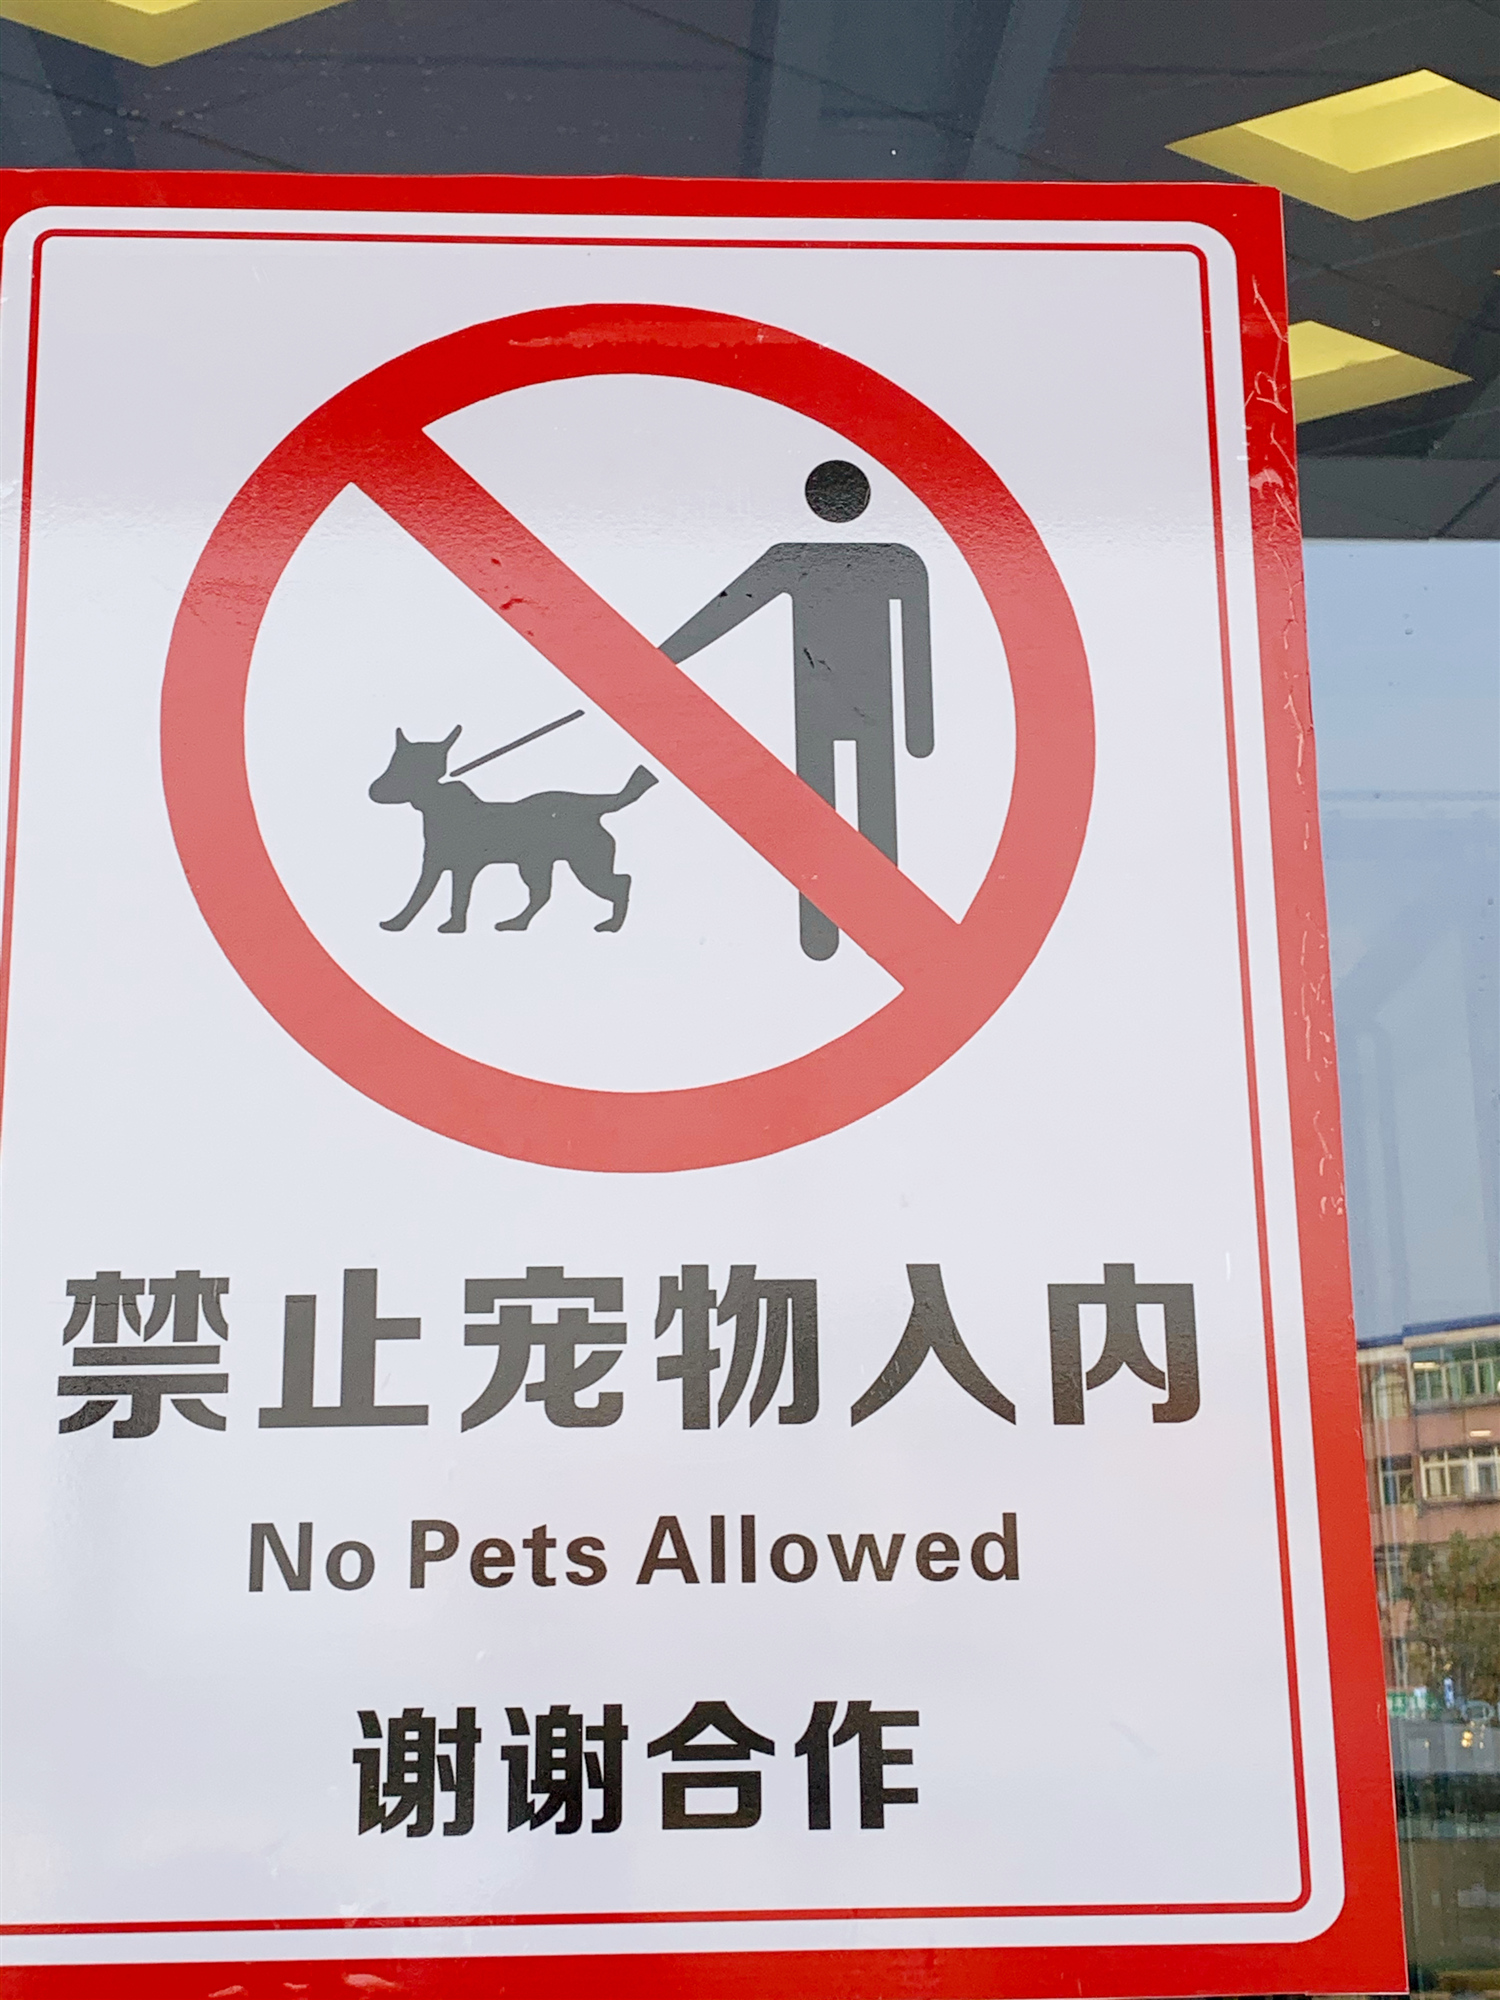 万达禁止宠物入内,遭爱狗人士不满:这个标志是对狗的歧视